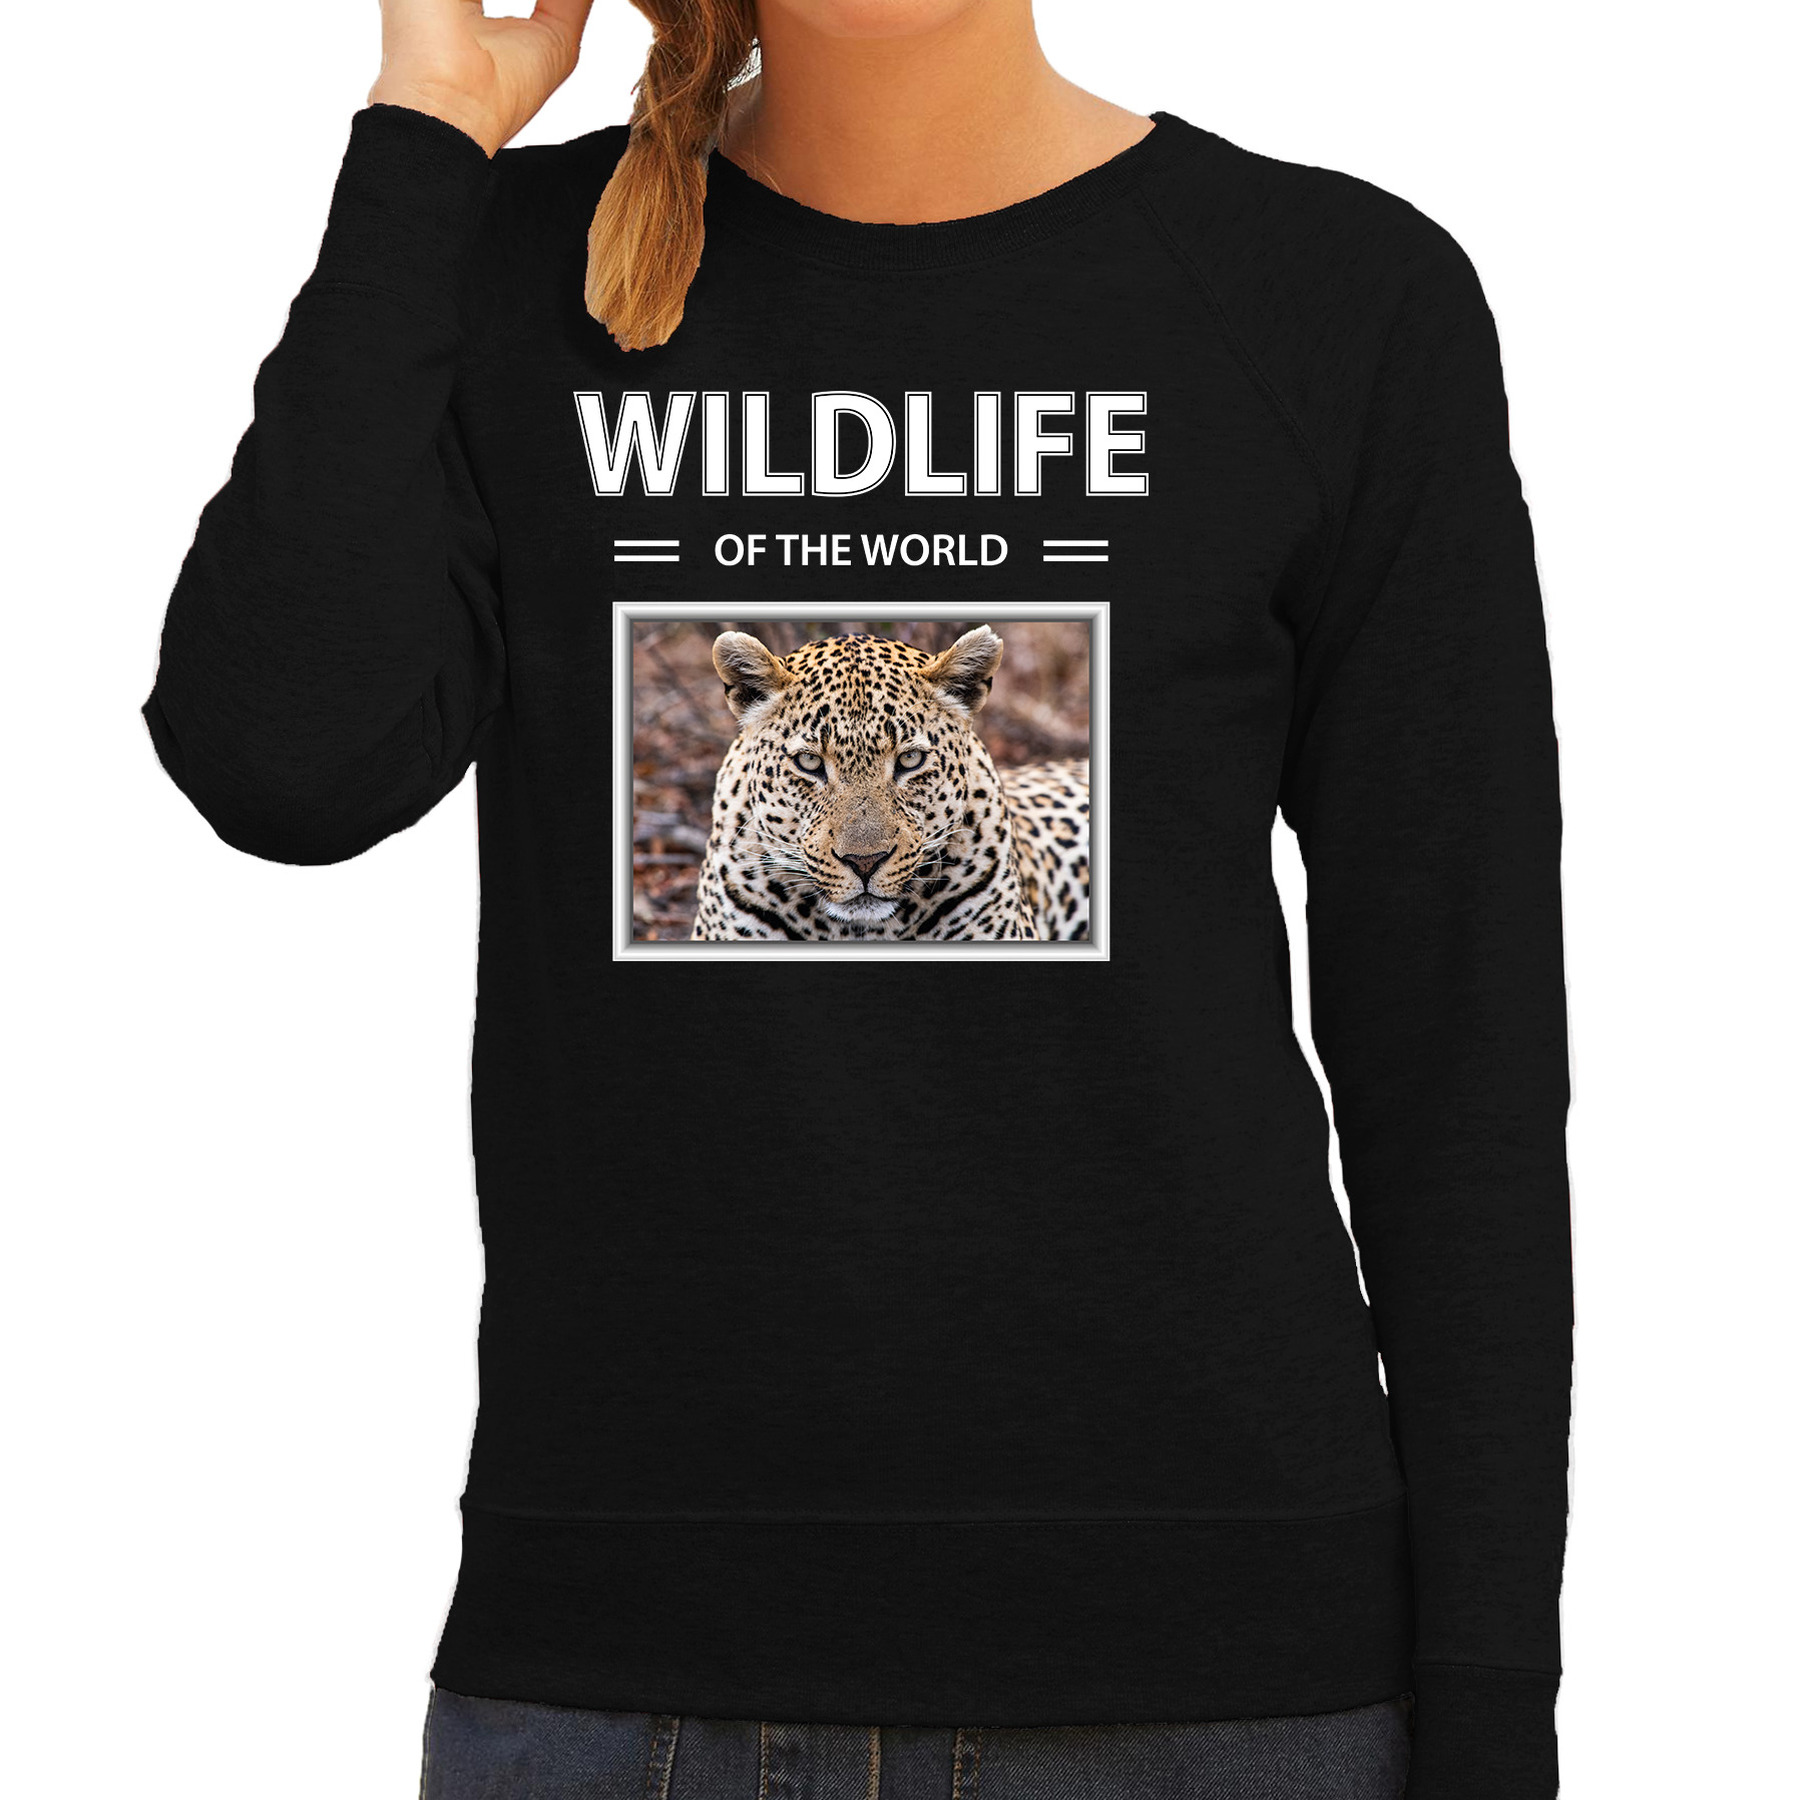 Jaguar sweater / trui met dieren foto wildlife of the world zwart voor dames